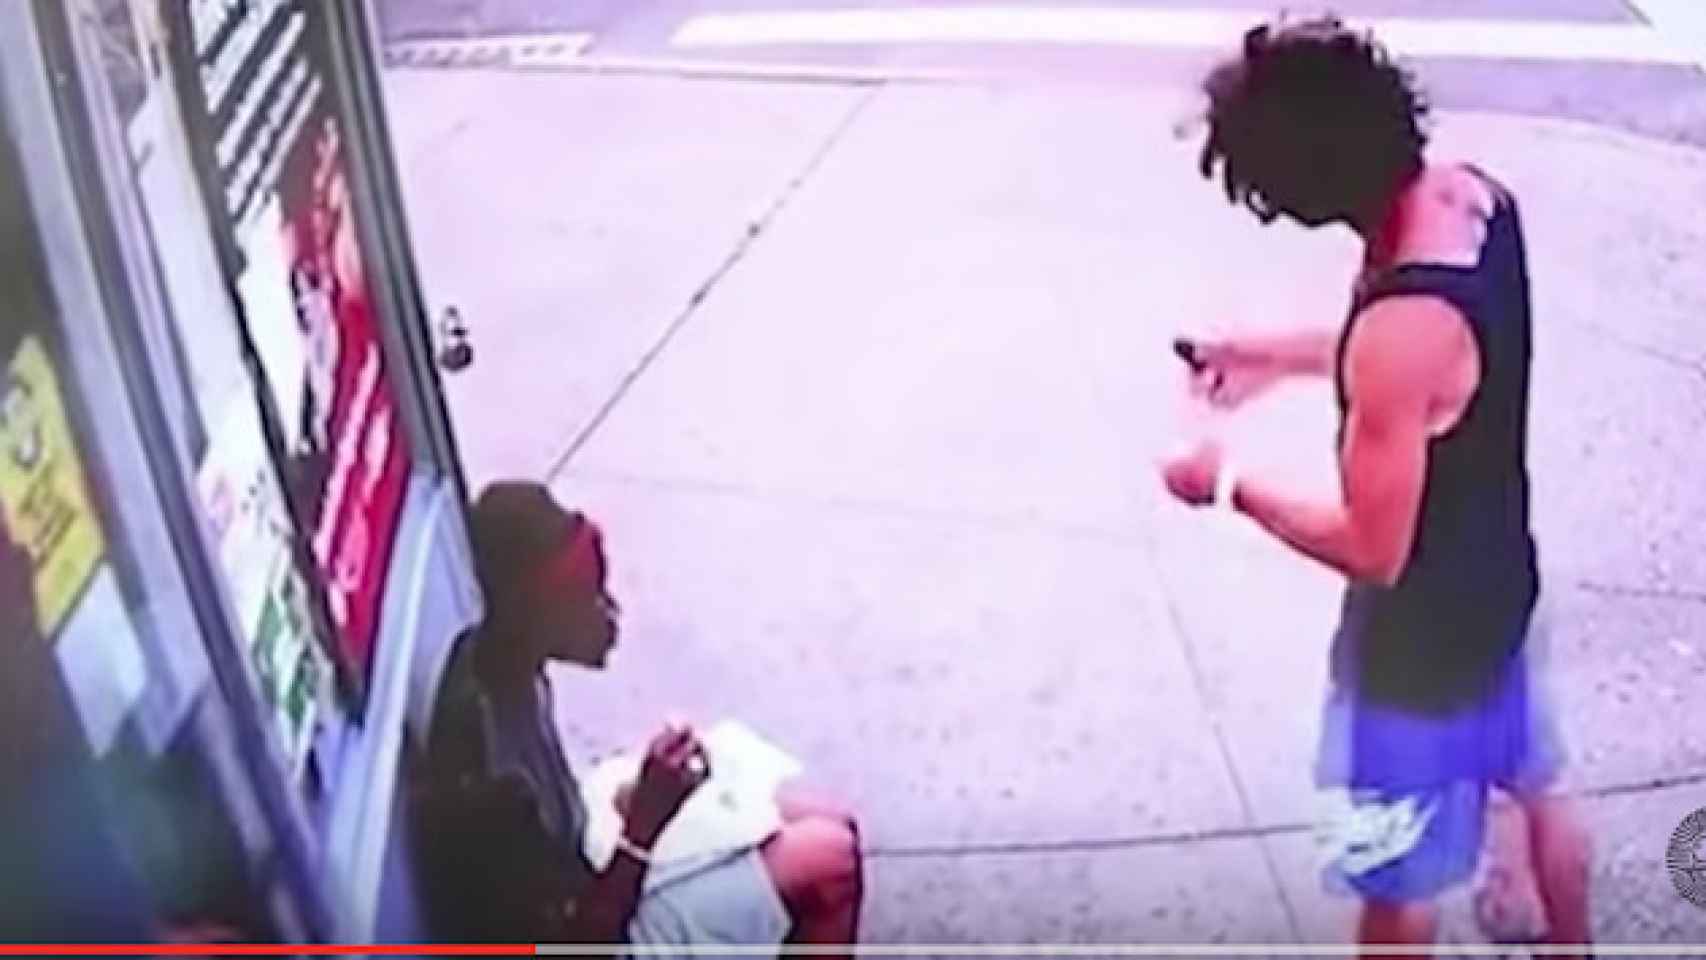 El agresor antes de agredir a un hombre sentado en la calle